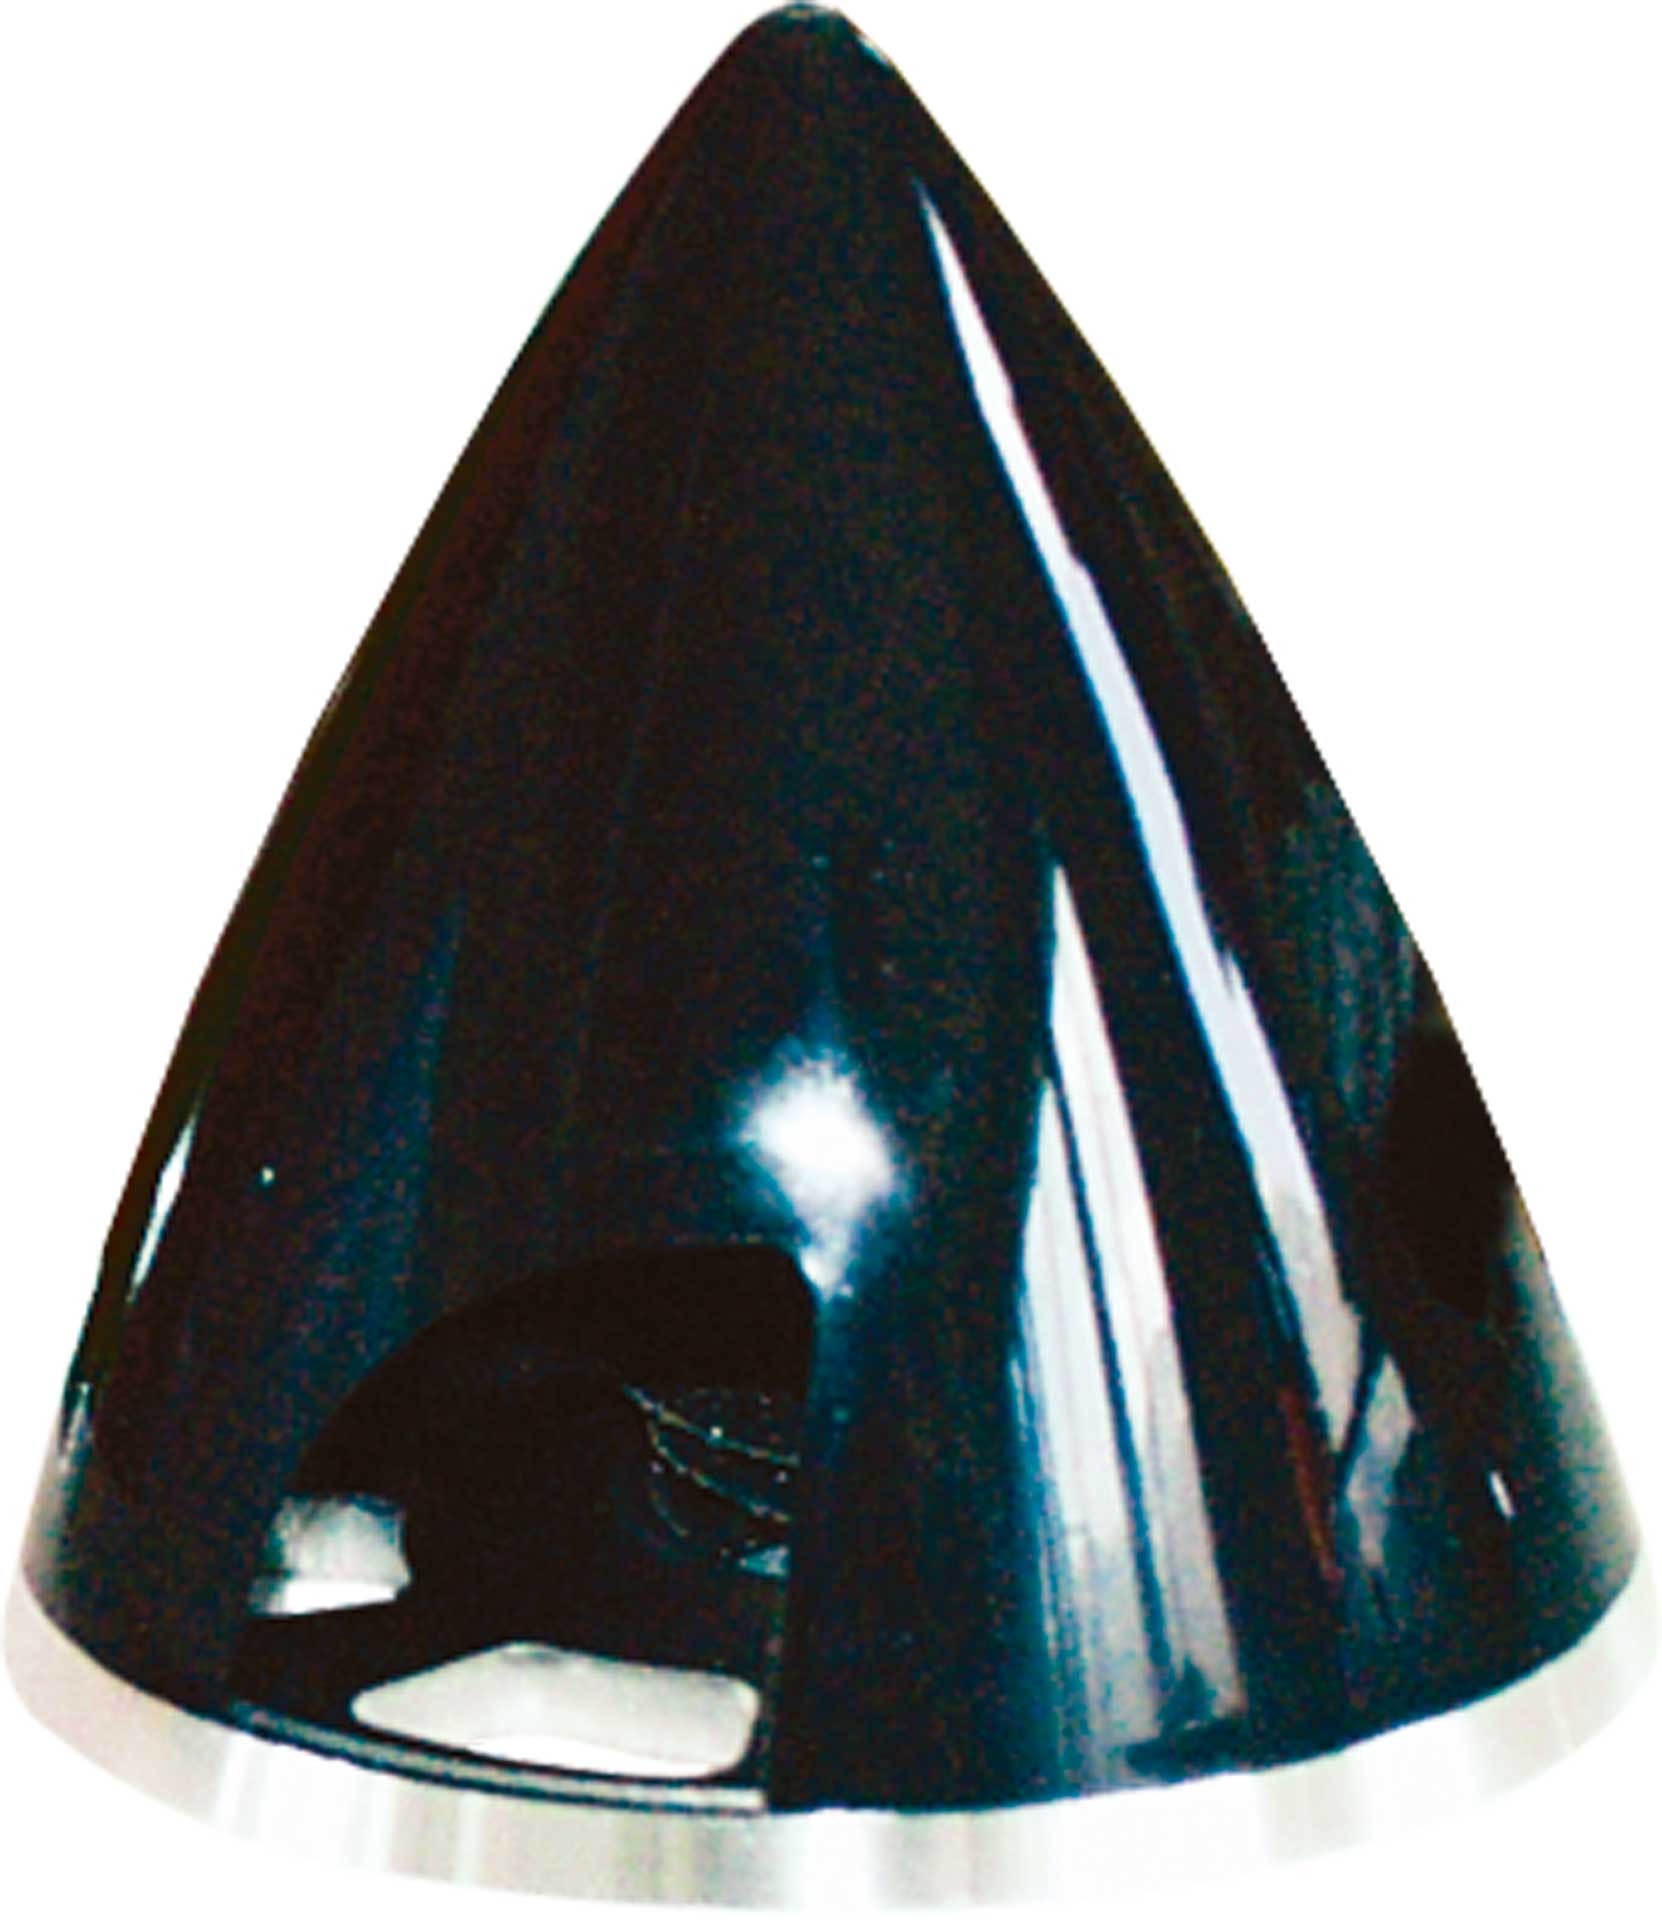 ARK Spinner Profi 75MM black plastic with aluminum base plate